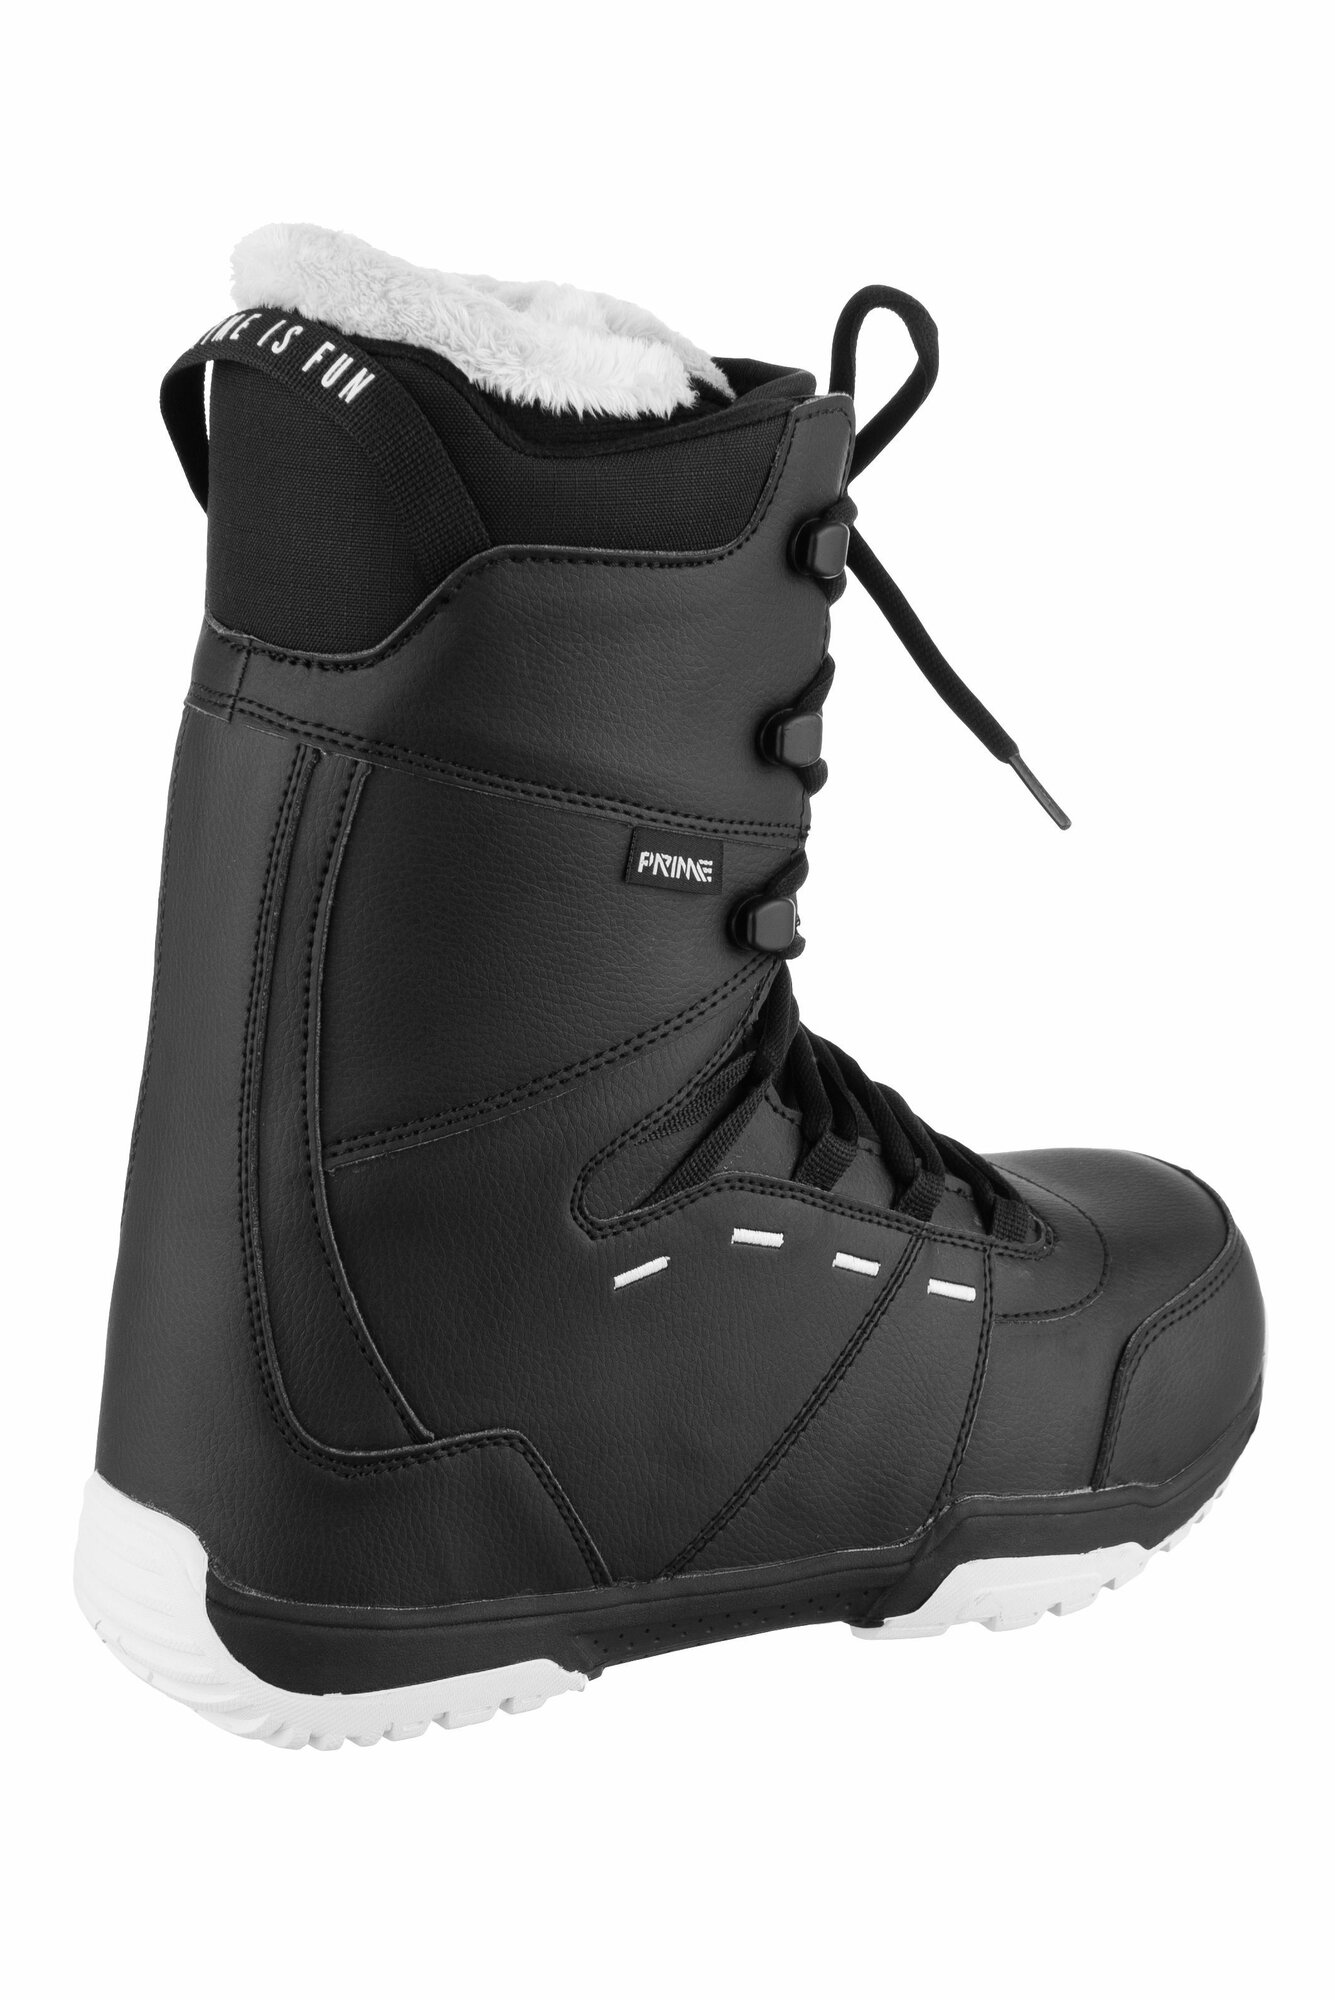 Ботинки сноубордические PRIME FUN-F1 Black (41 RU / 27 cm)